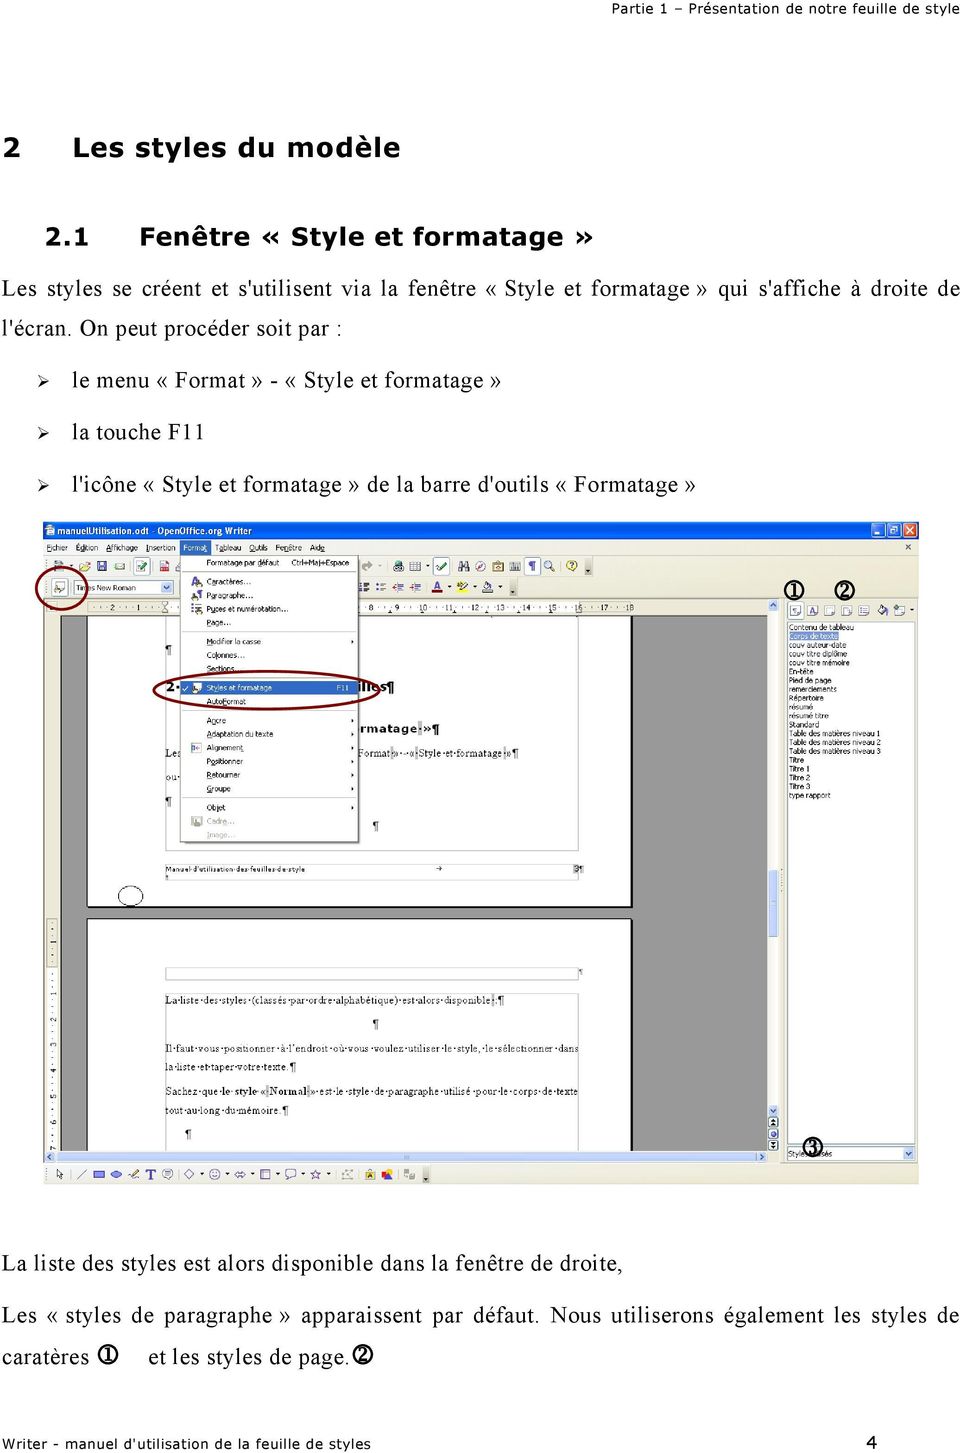 On peut procéder soit par : le menu «Format» - «Style et formatage» la touche F11 l'icône «Style et formatage» de la barre d'outils